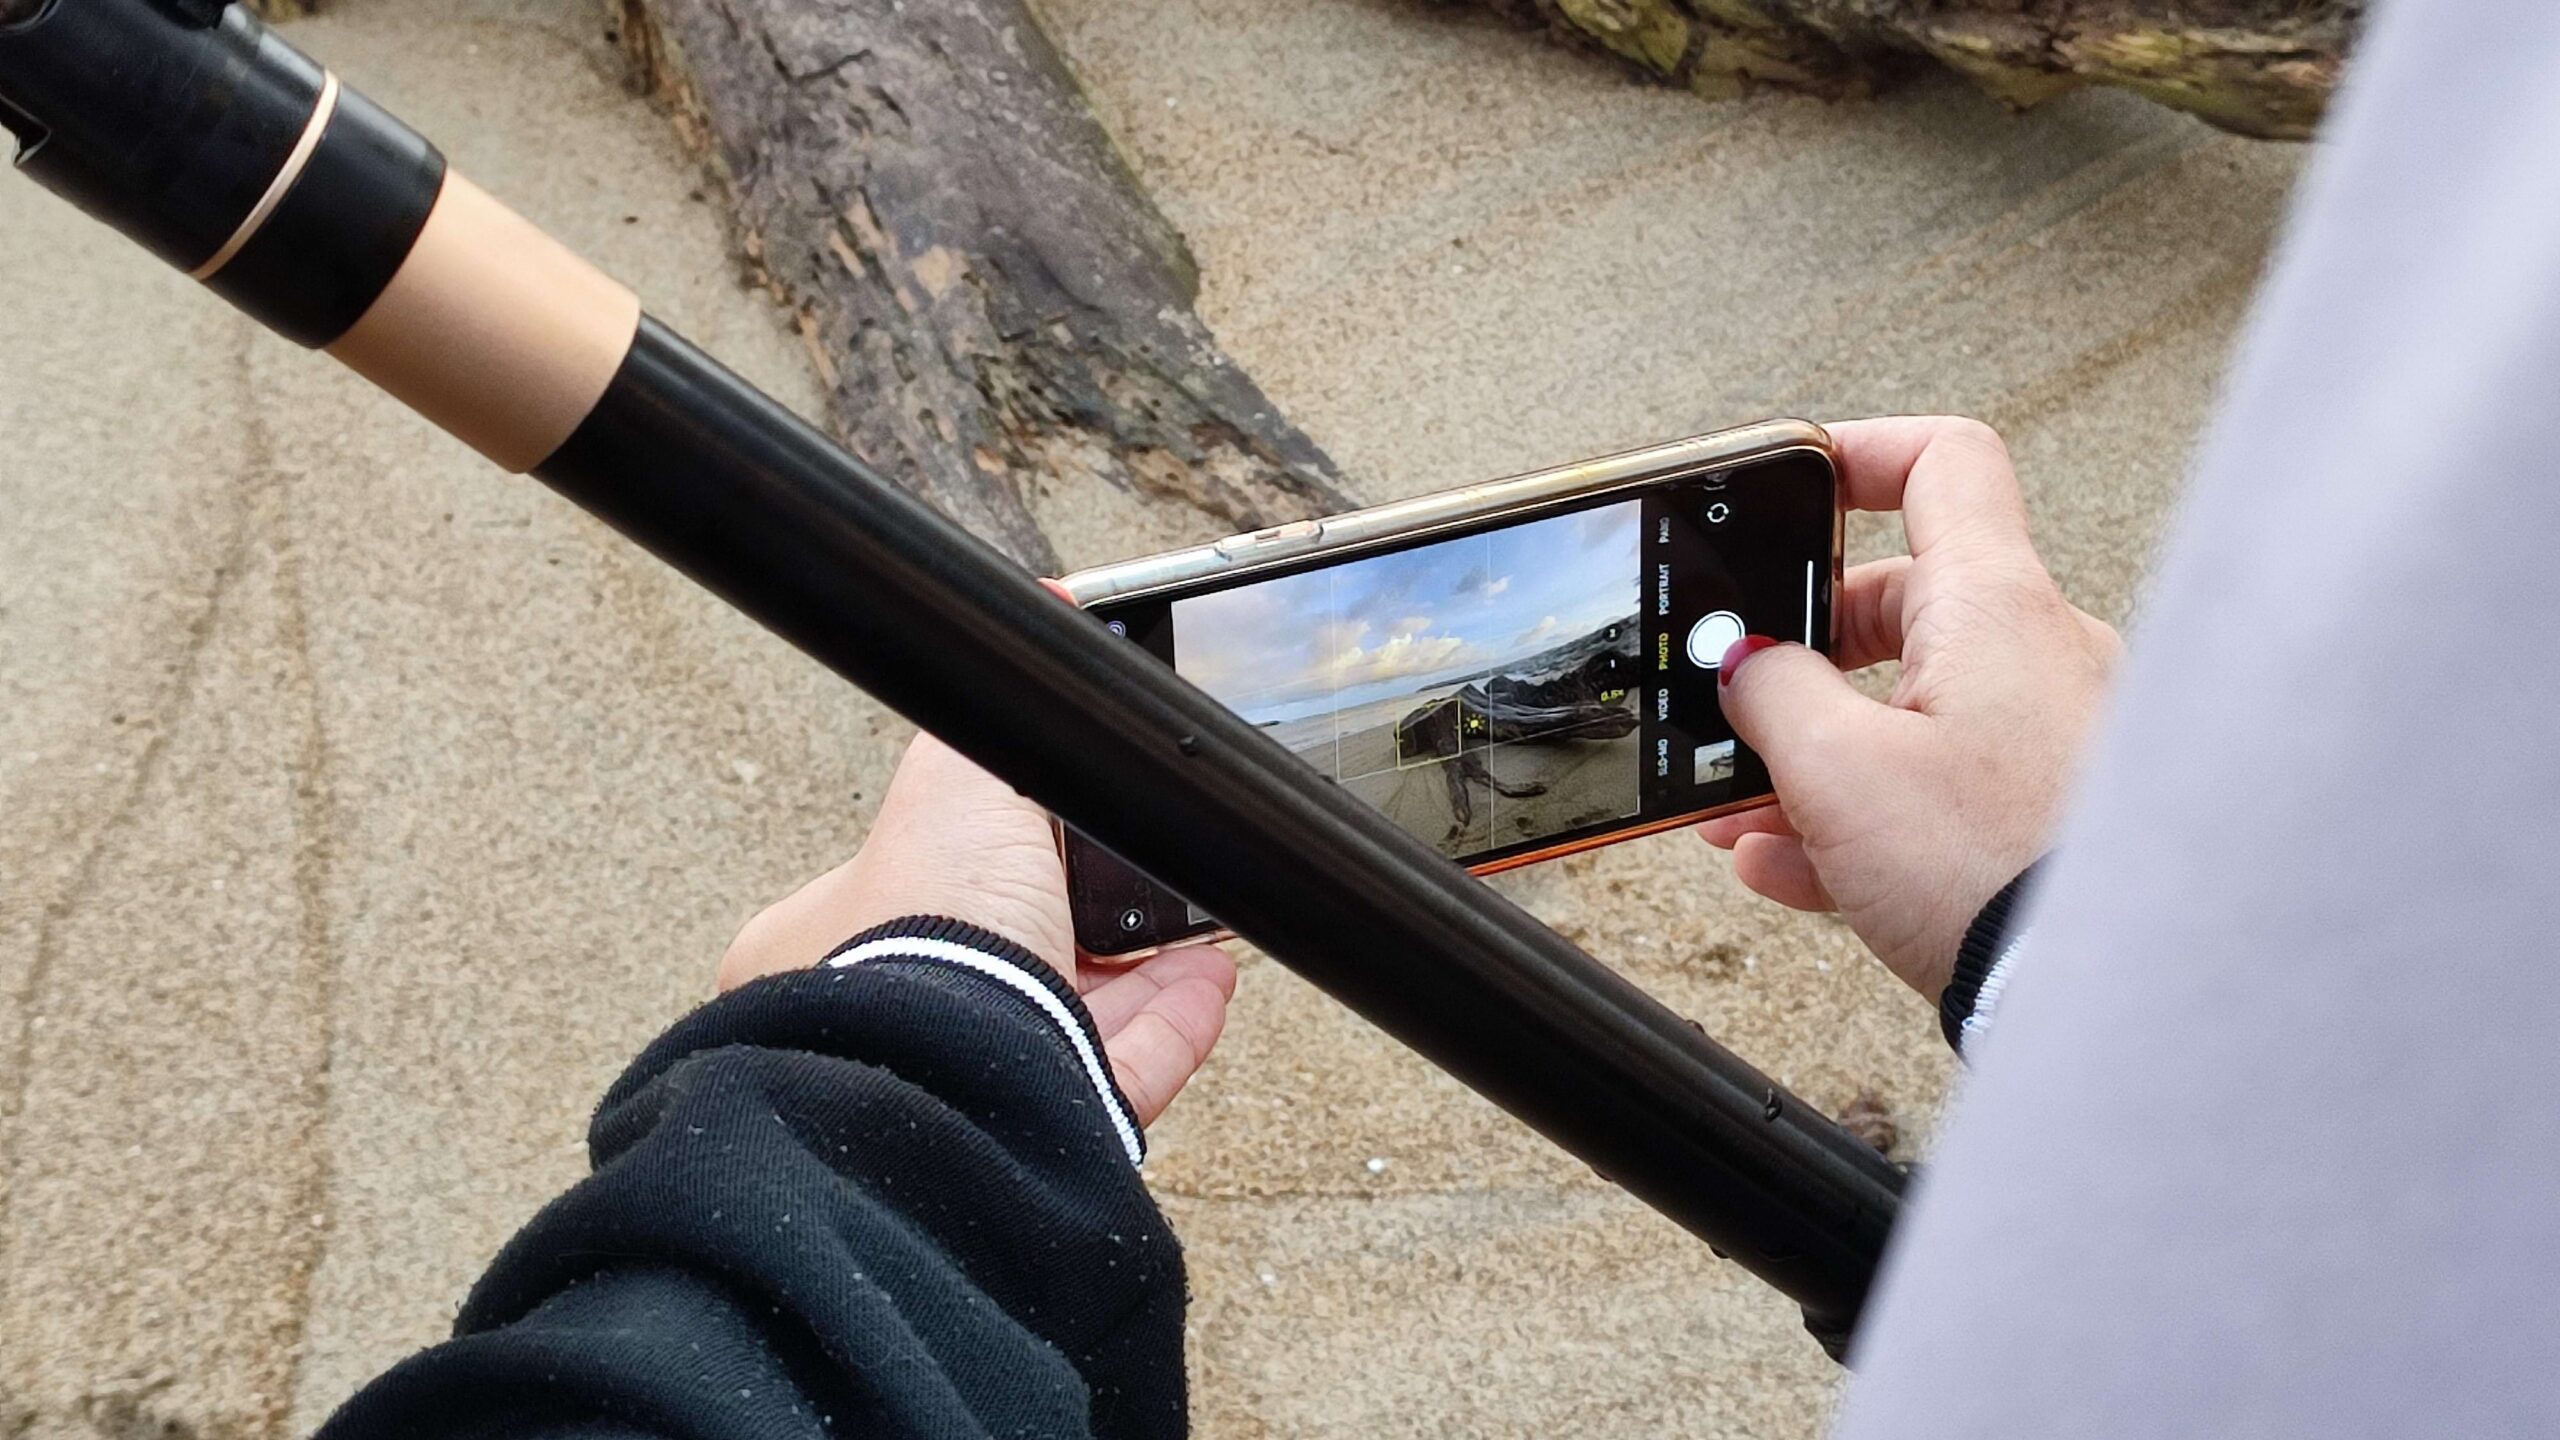 Pessoa tirando foto de paisagem com celular Xiaomi, vestindo uma blusa preta de manga longa e segurando um bastão